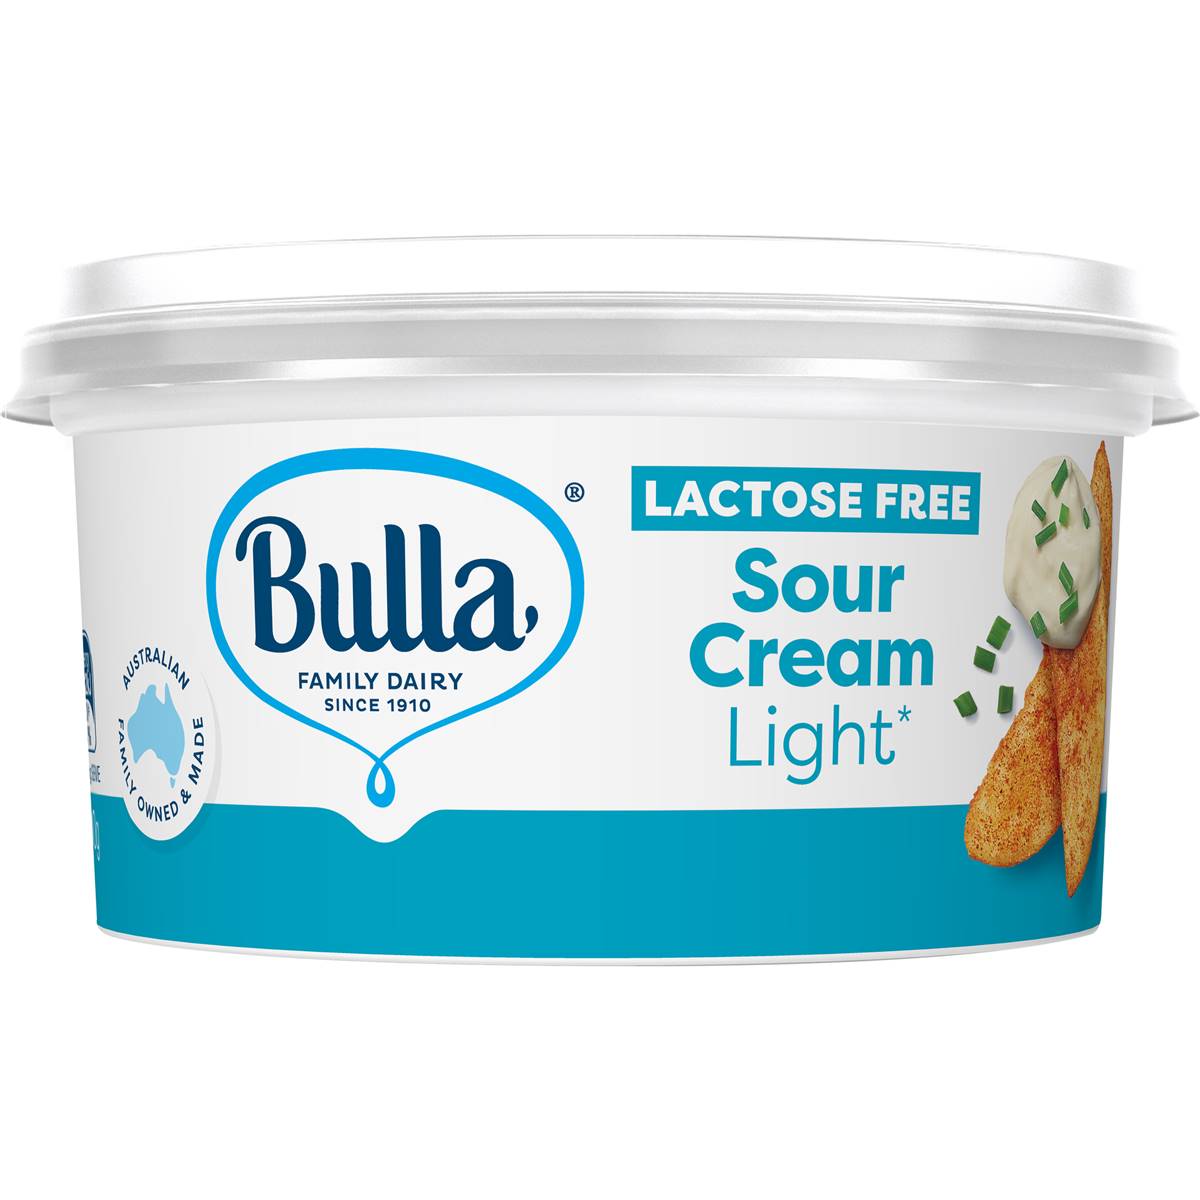 Bulla Sour Cream Light Lactose Free 200g